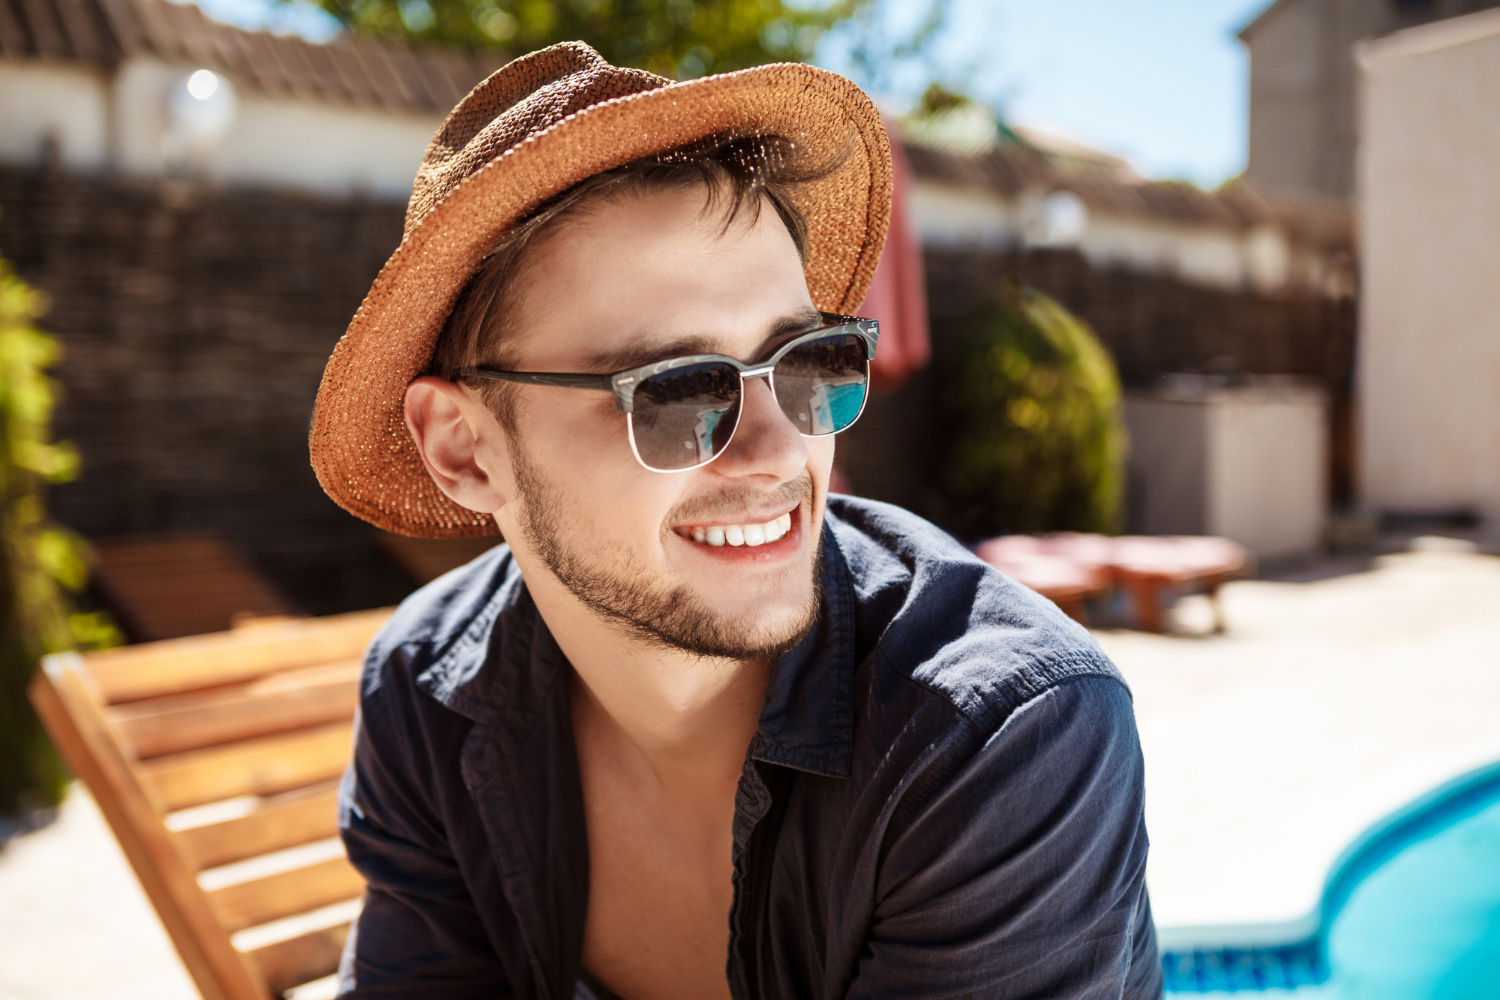 Las gafas de sol para hombre de estilo clásico y los modelos más coloridos son las principales tendencias este verano